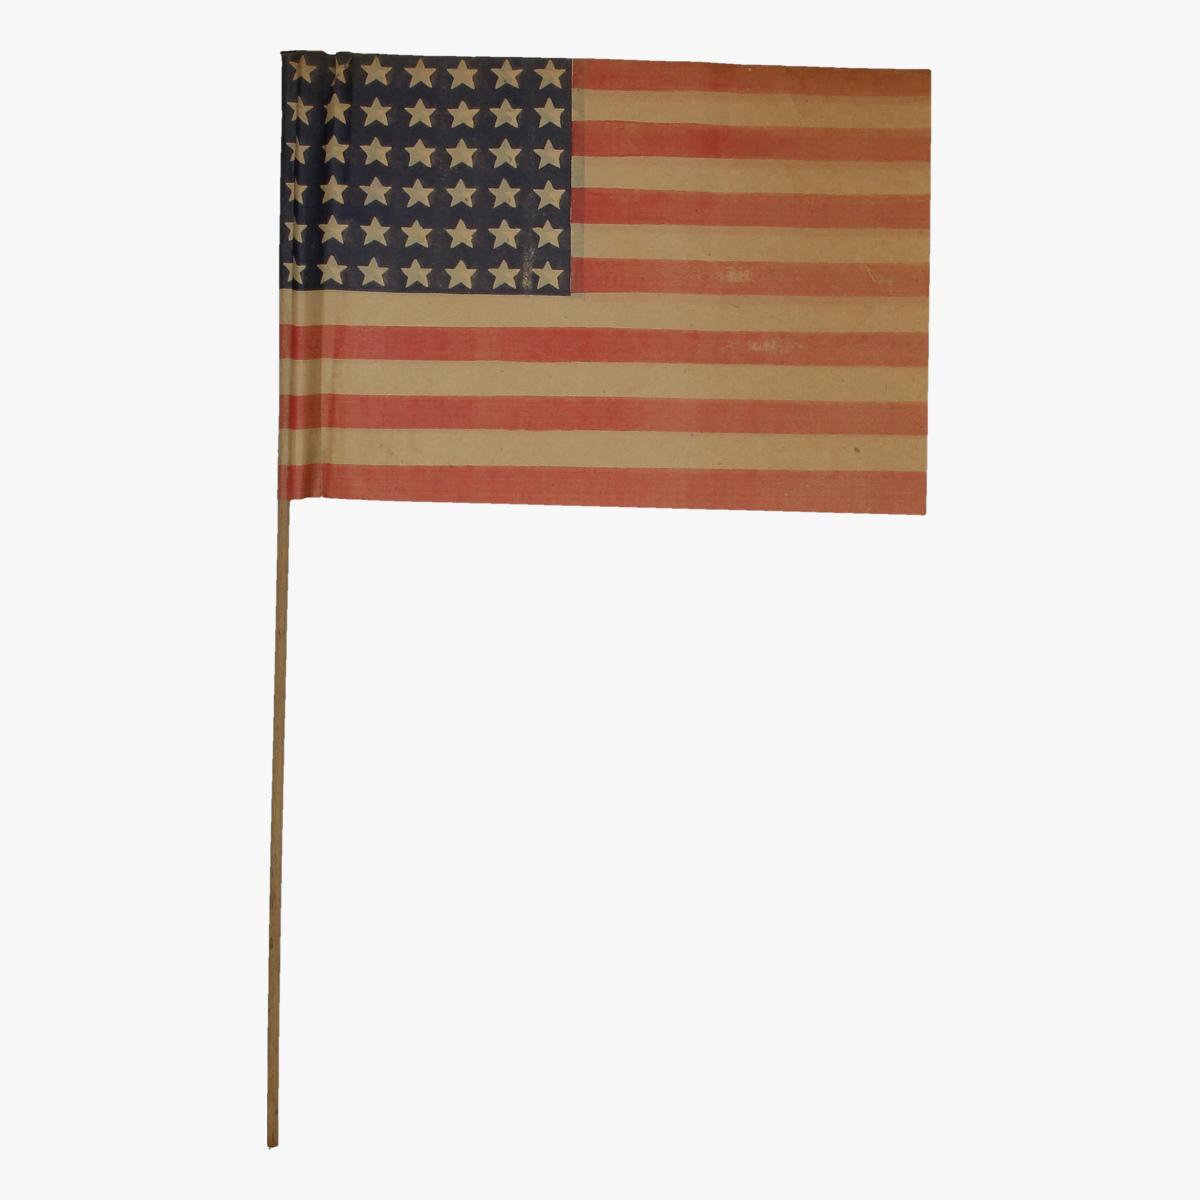 Afbeeldingen van expo 58 amerikaanse vlagje 